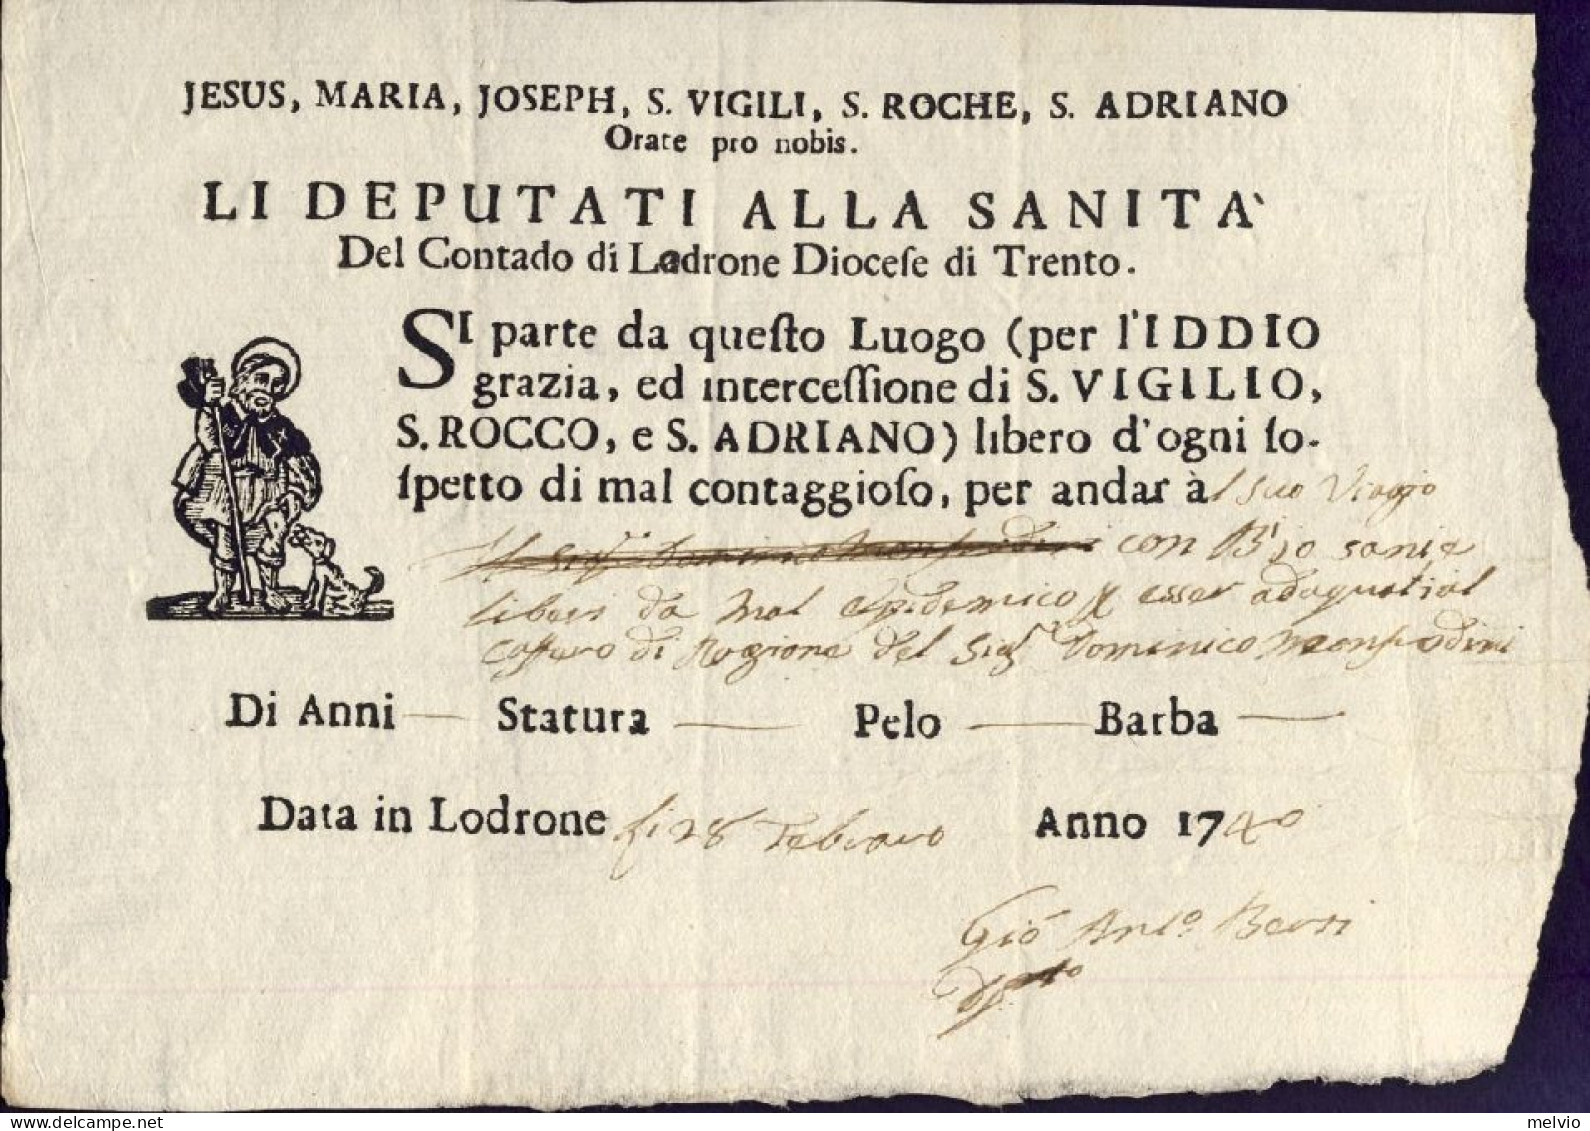 1740-Lodrone Trento Fede Di Sanita' Li Deputati Contrado Di Lodrone Diocesi Di T - Historical Documents